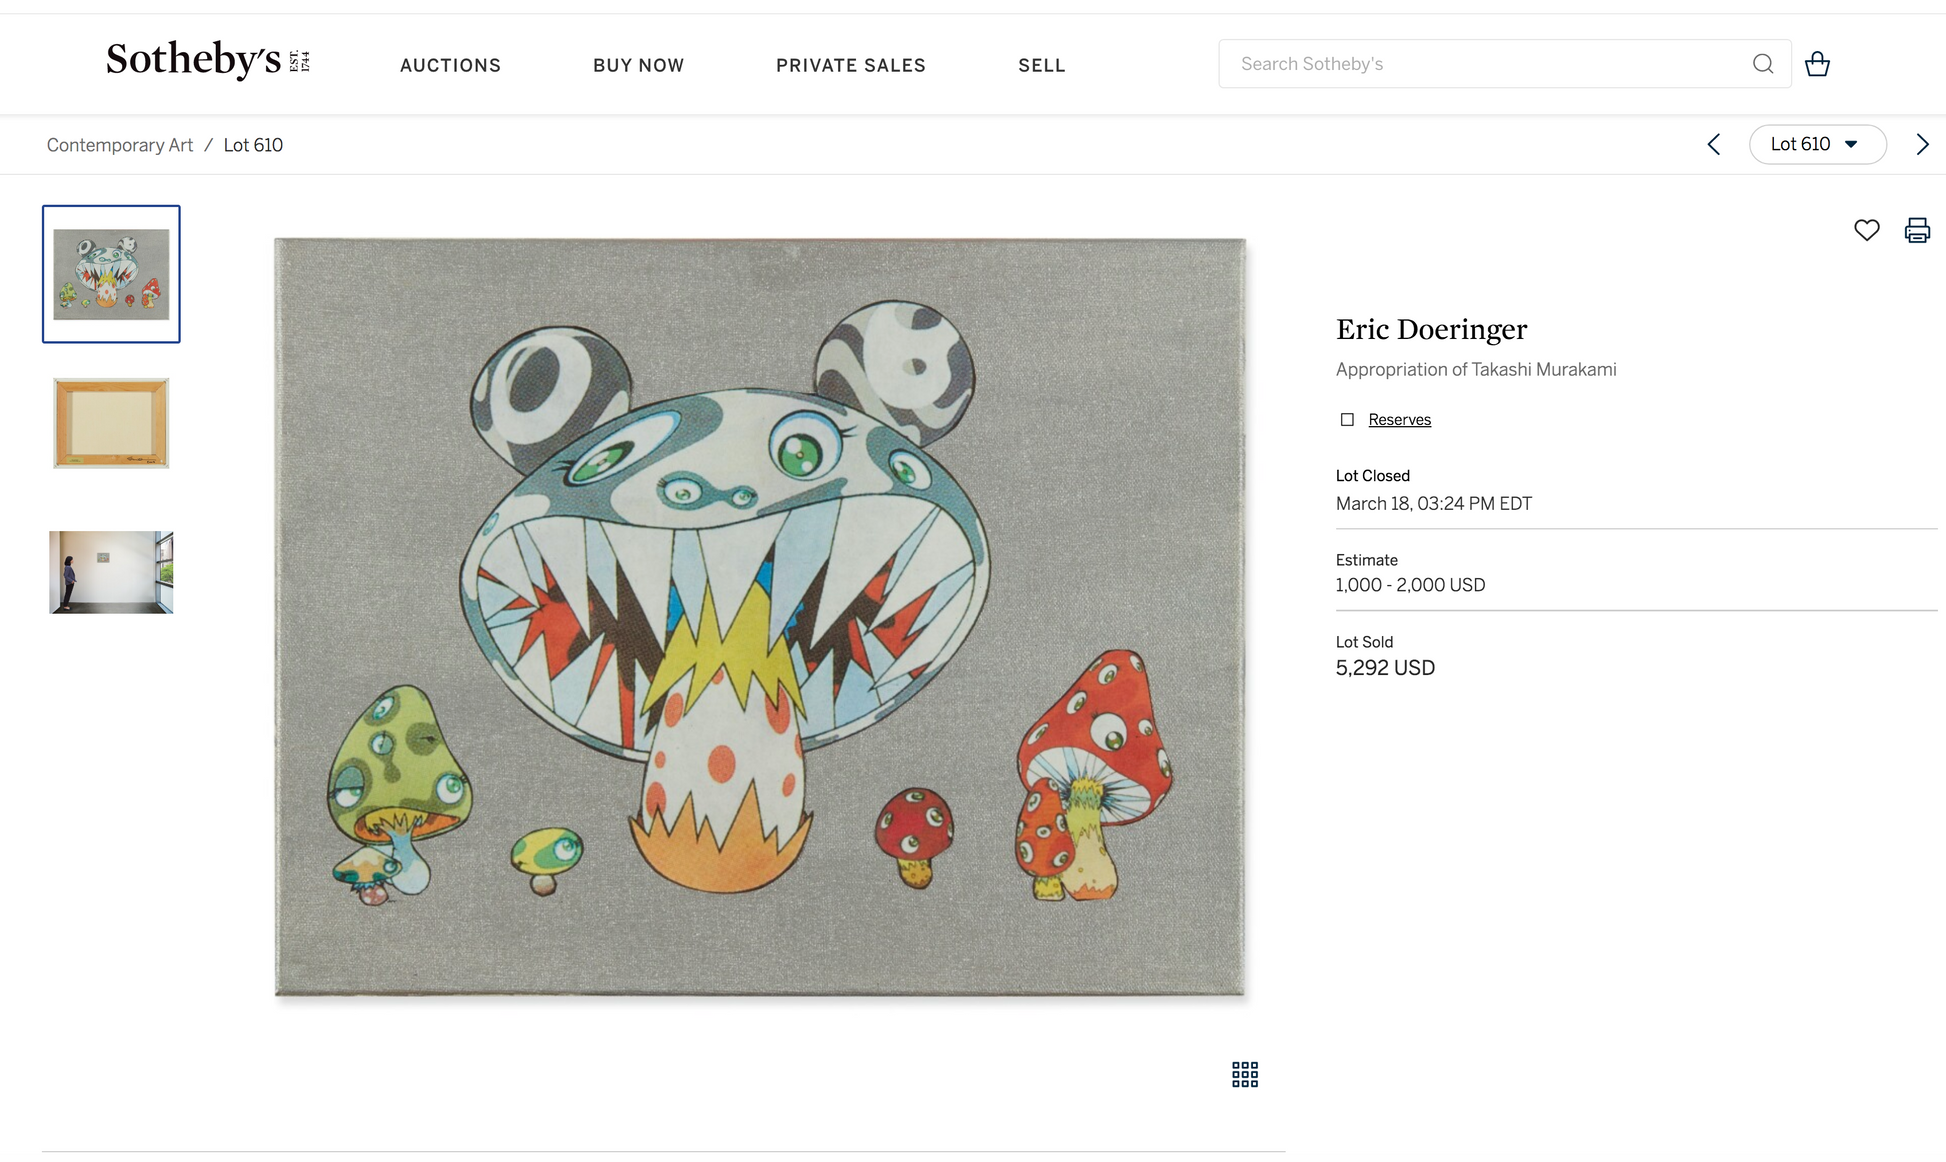 Eric Doeringer Sotheby's $5,292